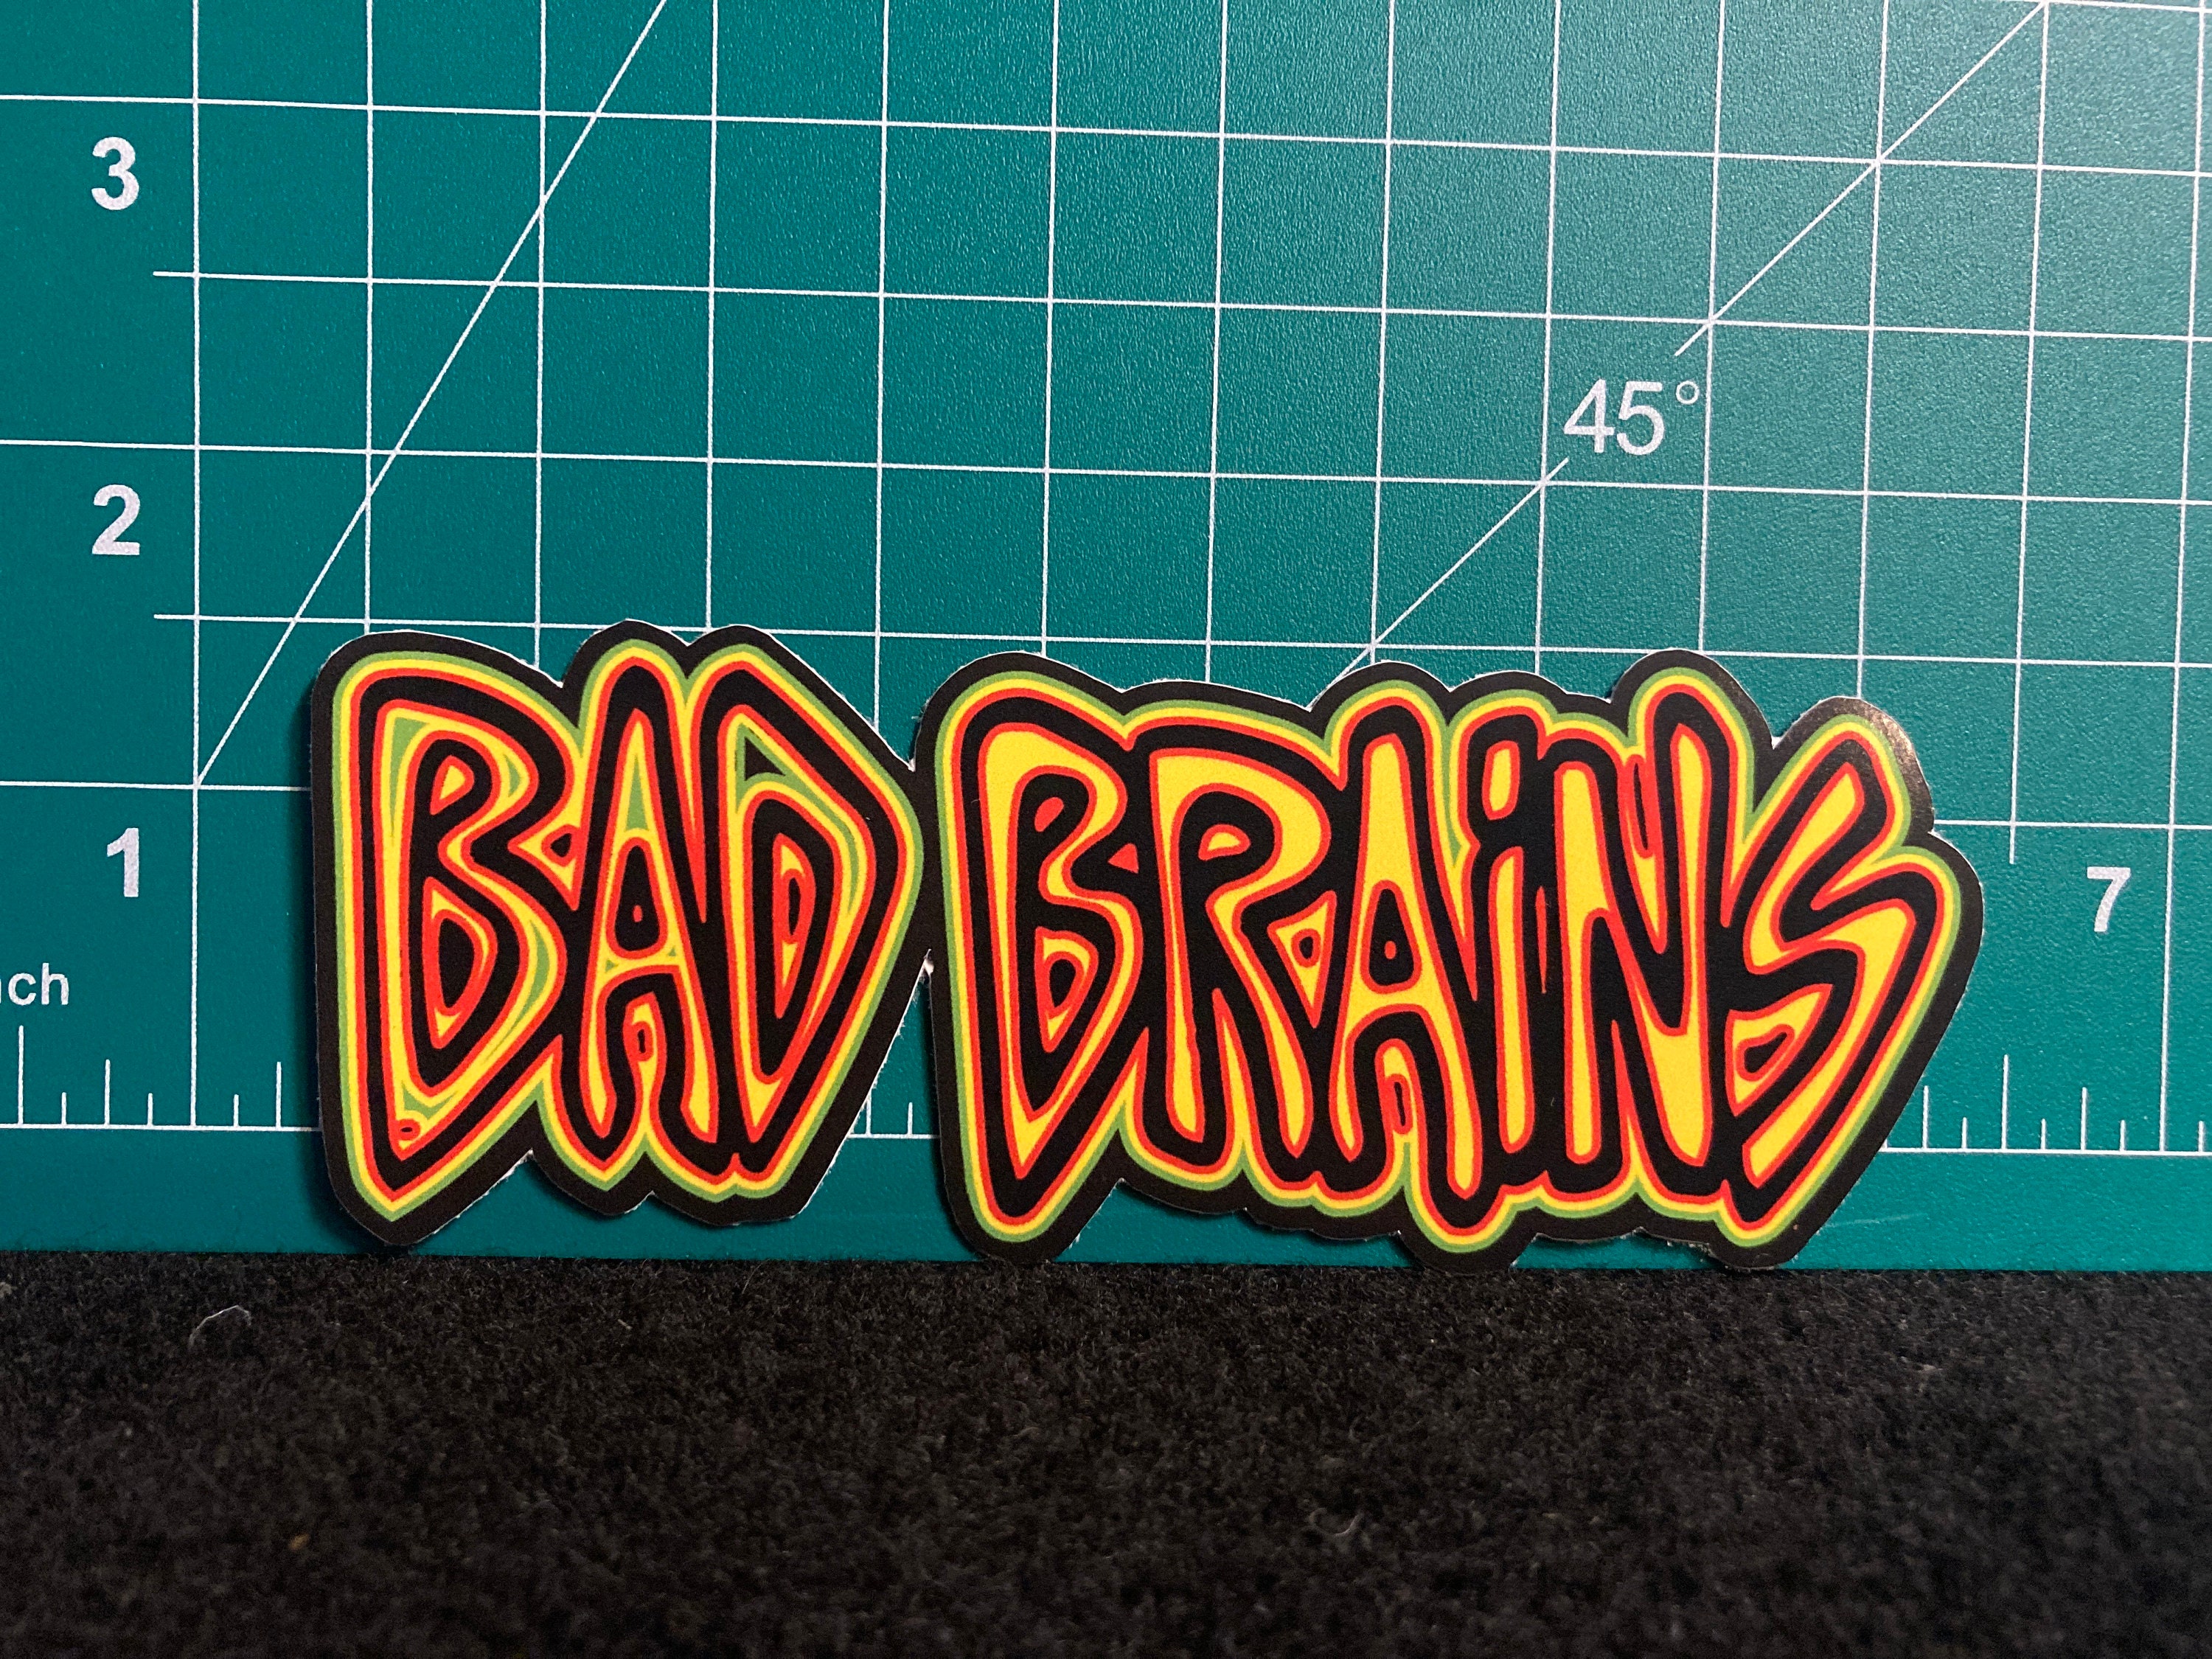 Bad Brains Vinyl Sticker Punk Rock 